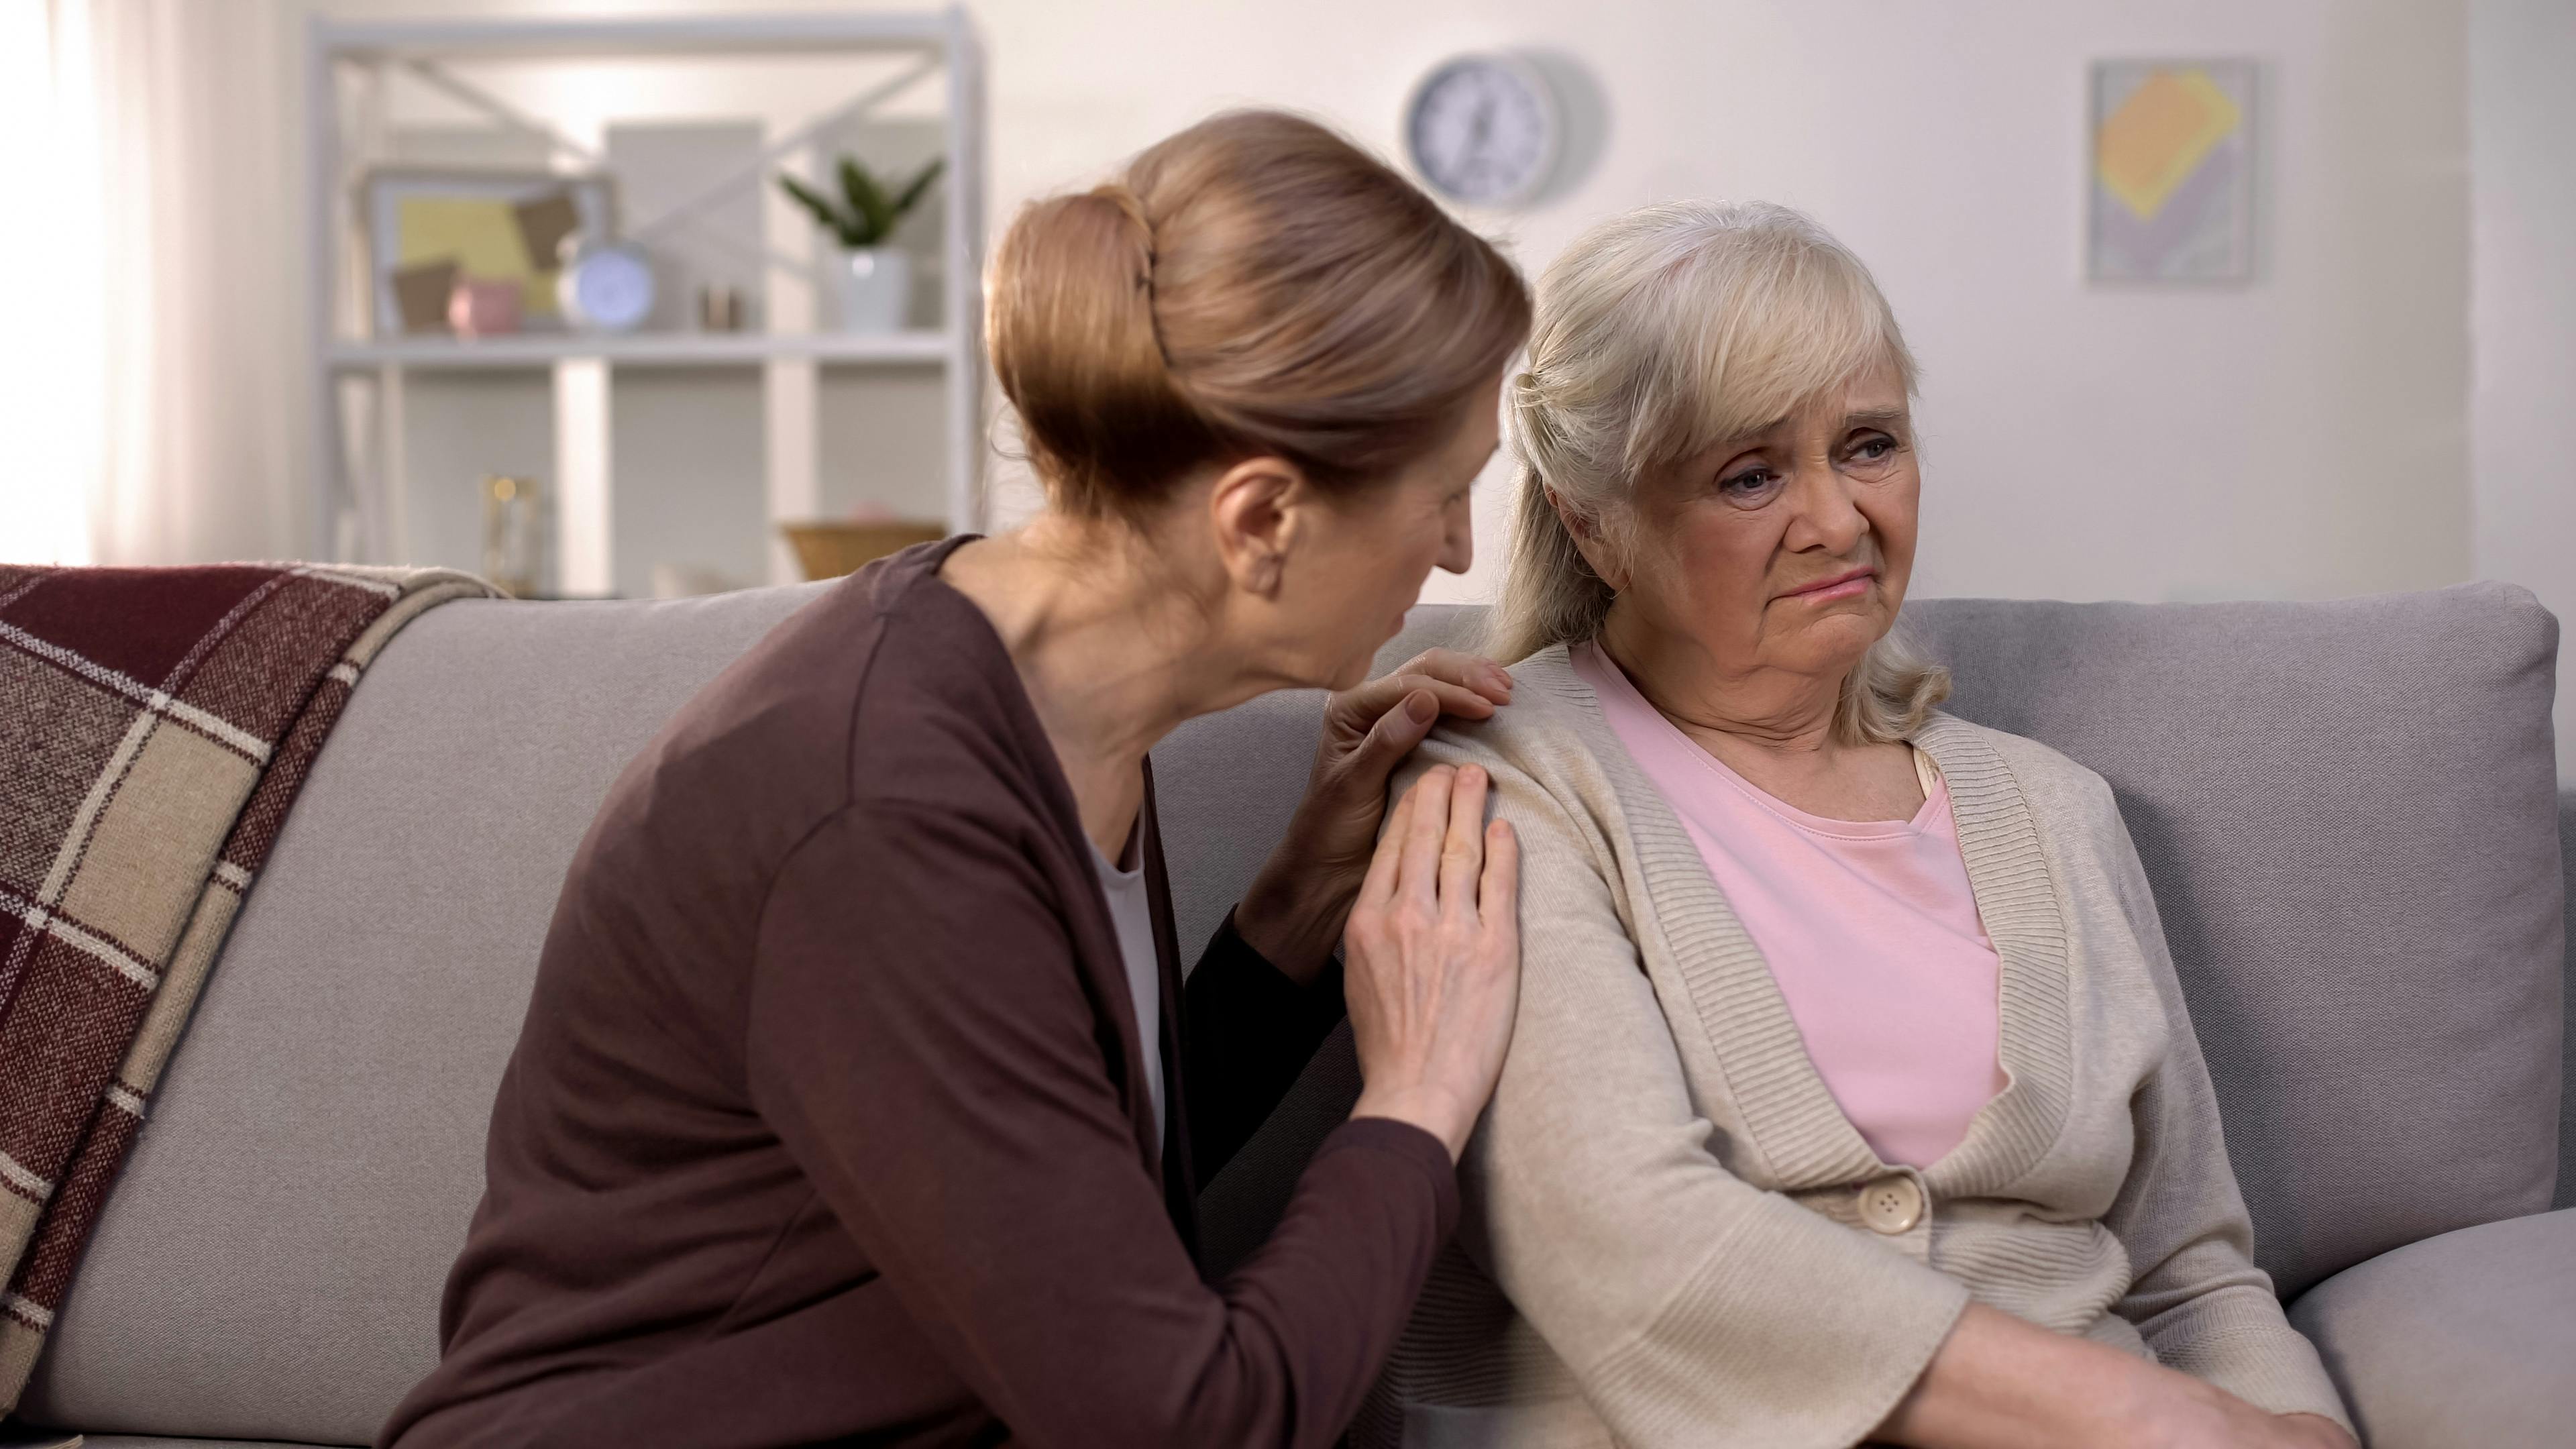 To ældre veninder sidder sammen i en sofa, og den ene holder omsorgsfuldt den anden på skulderen.